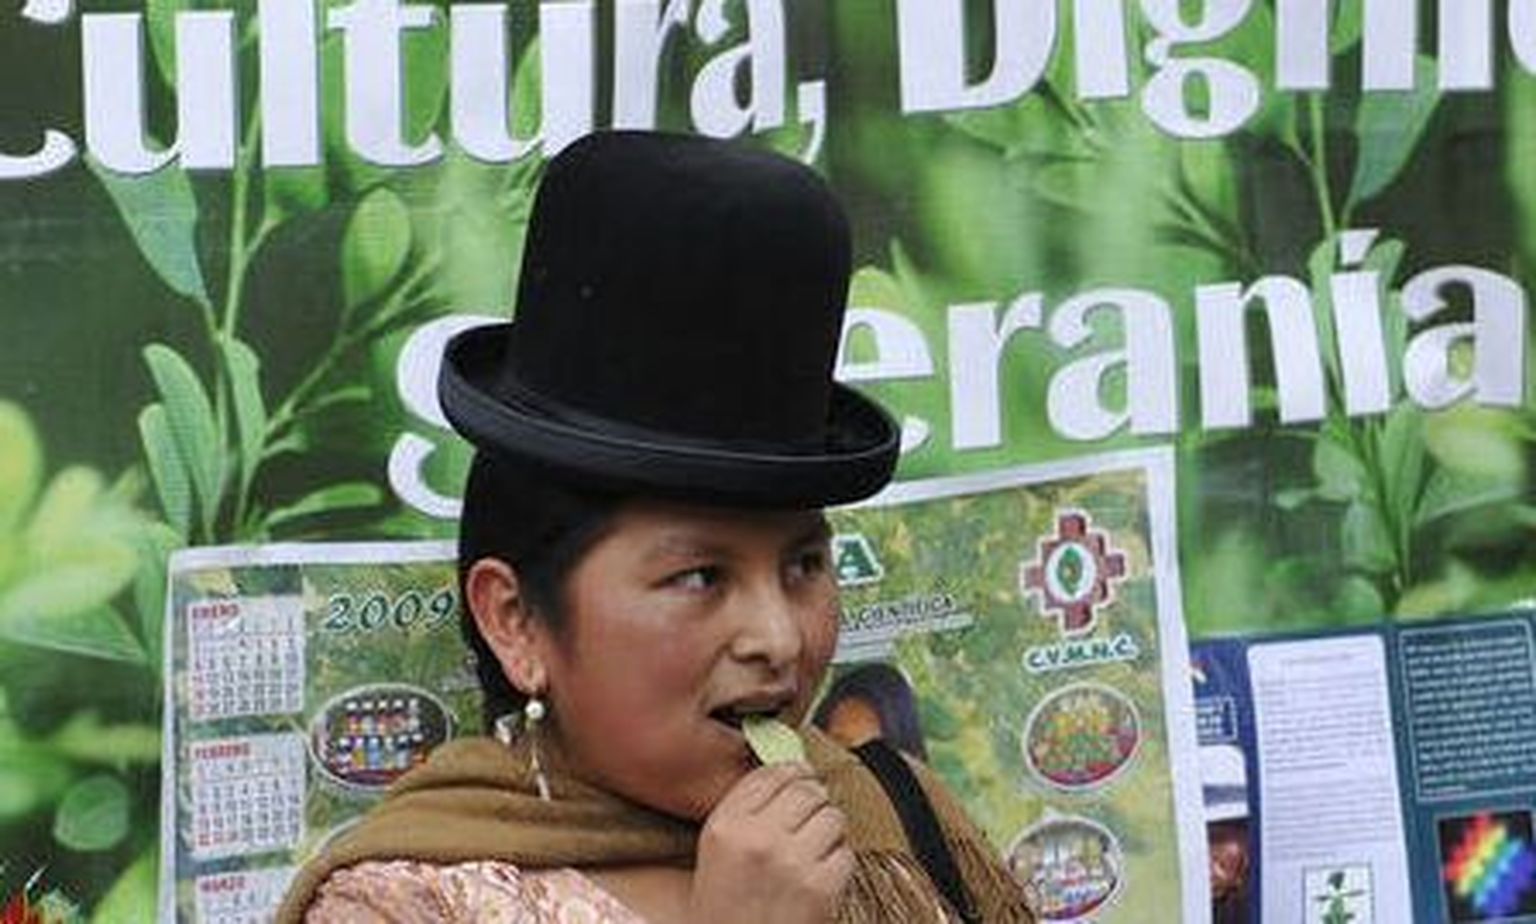 Aymara indiaanihõimu naine kokalehte suhu pistmas